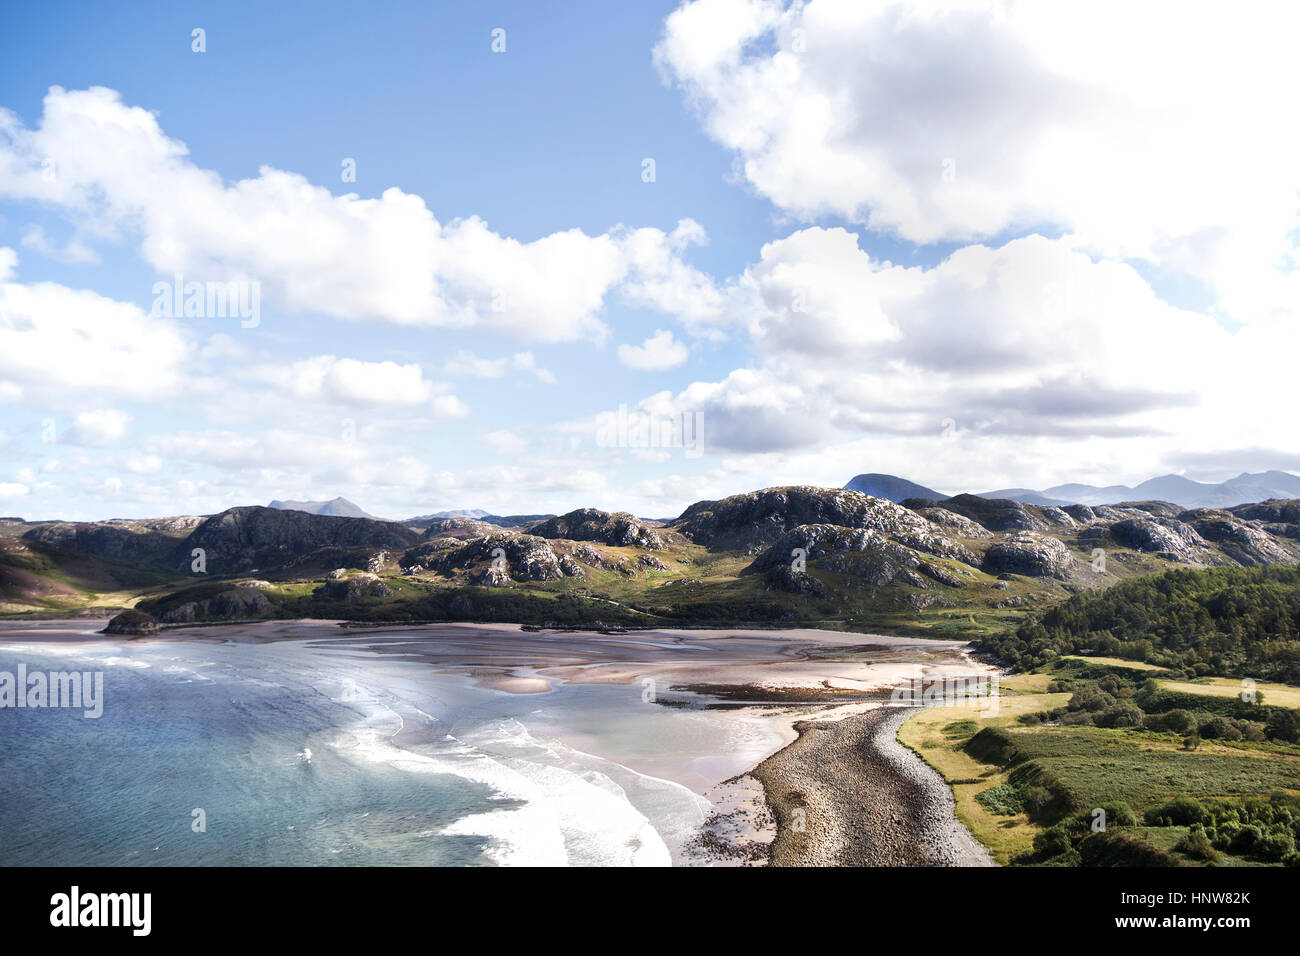 La vista horizontal elevada con vistas al mar y a la playa, Scotland, Reino Unido Foto de stock